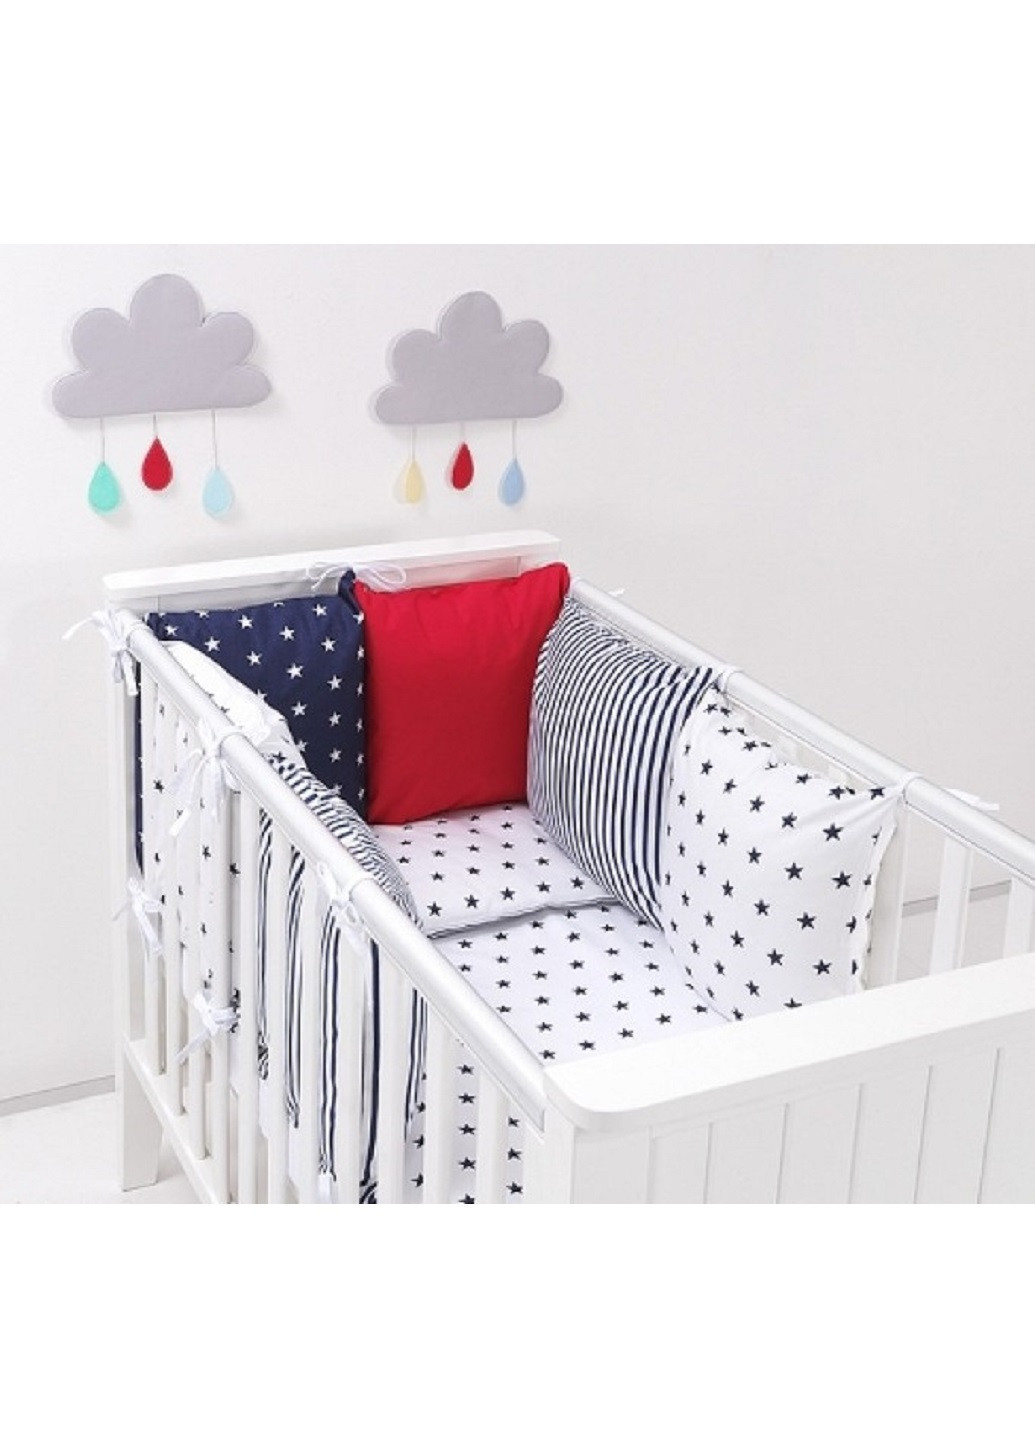 Комплект в детскую кроватку кровать люльку набор бортики защита на три стороны постельное белье ручной работы (28586-Нов) Unbranded (253195909)